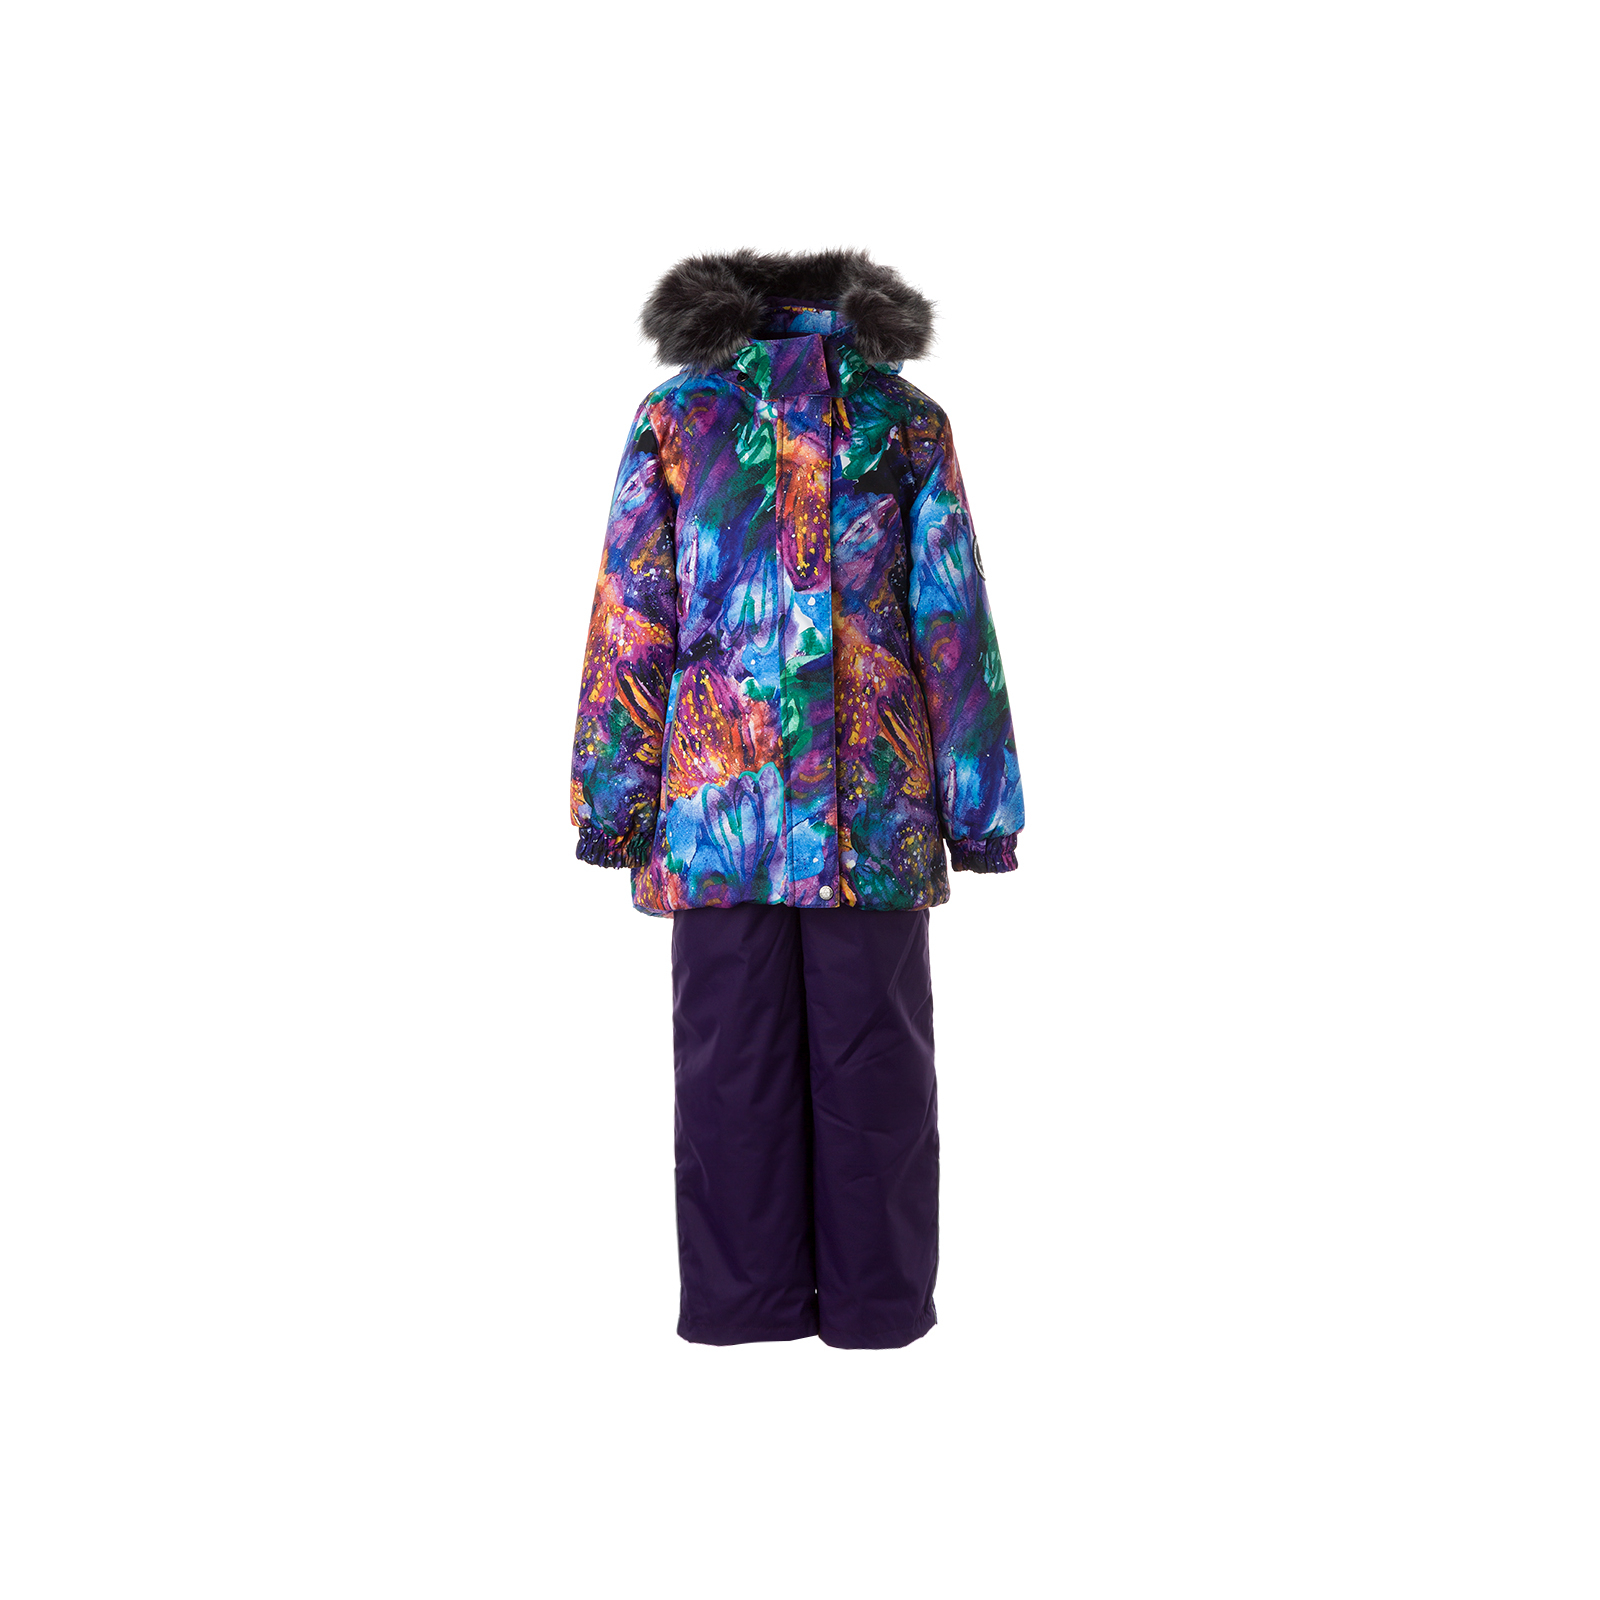 Комплект верхней одежды Huppa RENELY 2 41850230 пурпур с принтом/тёмно-лилoвый 110 (4741468979021)